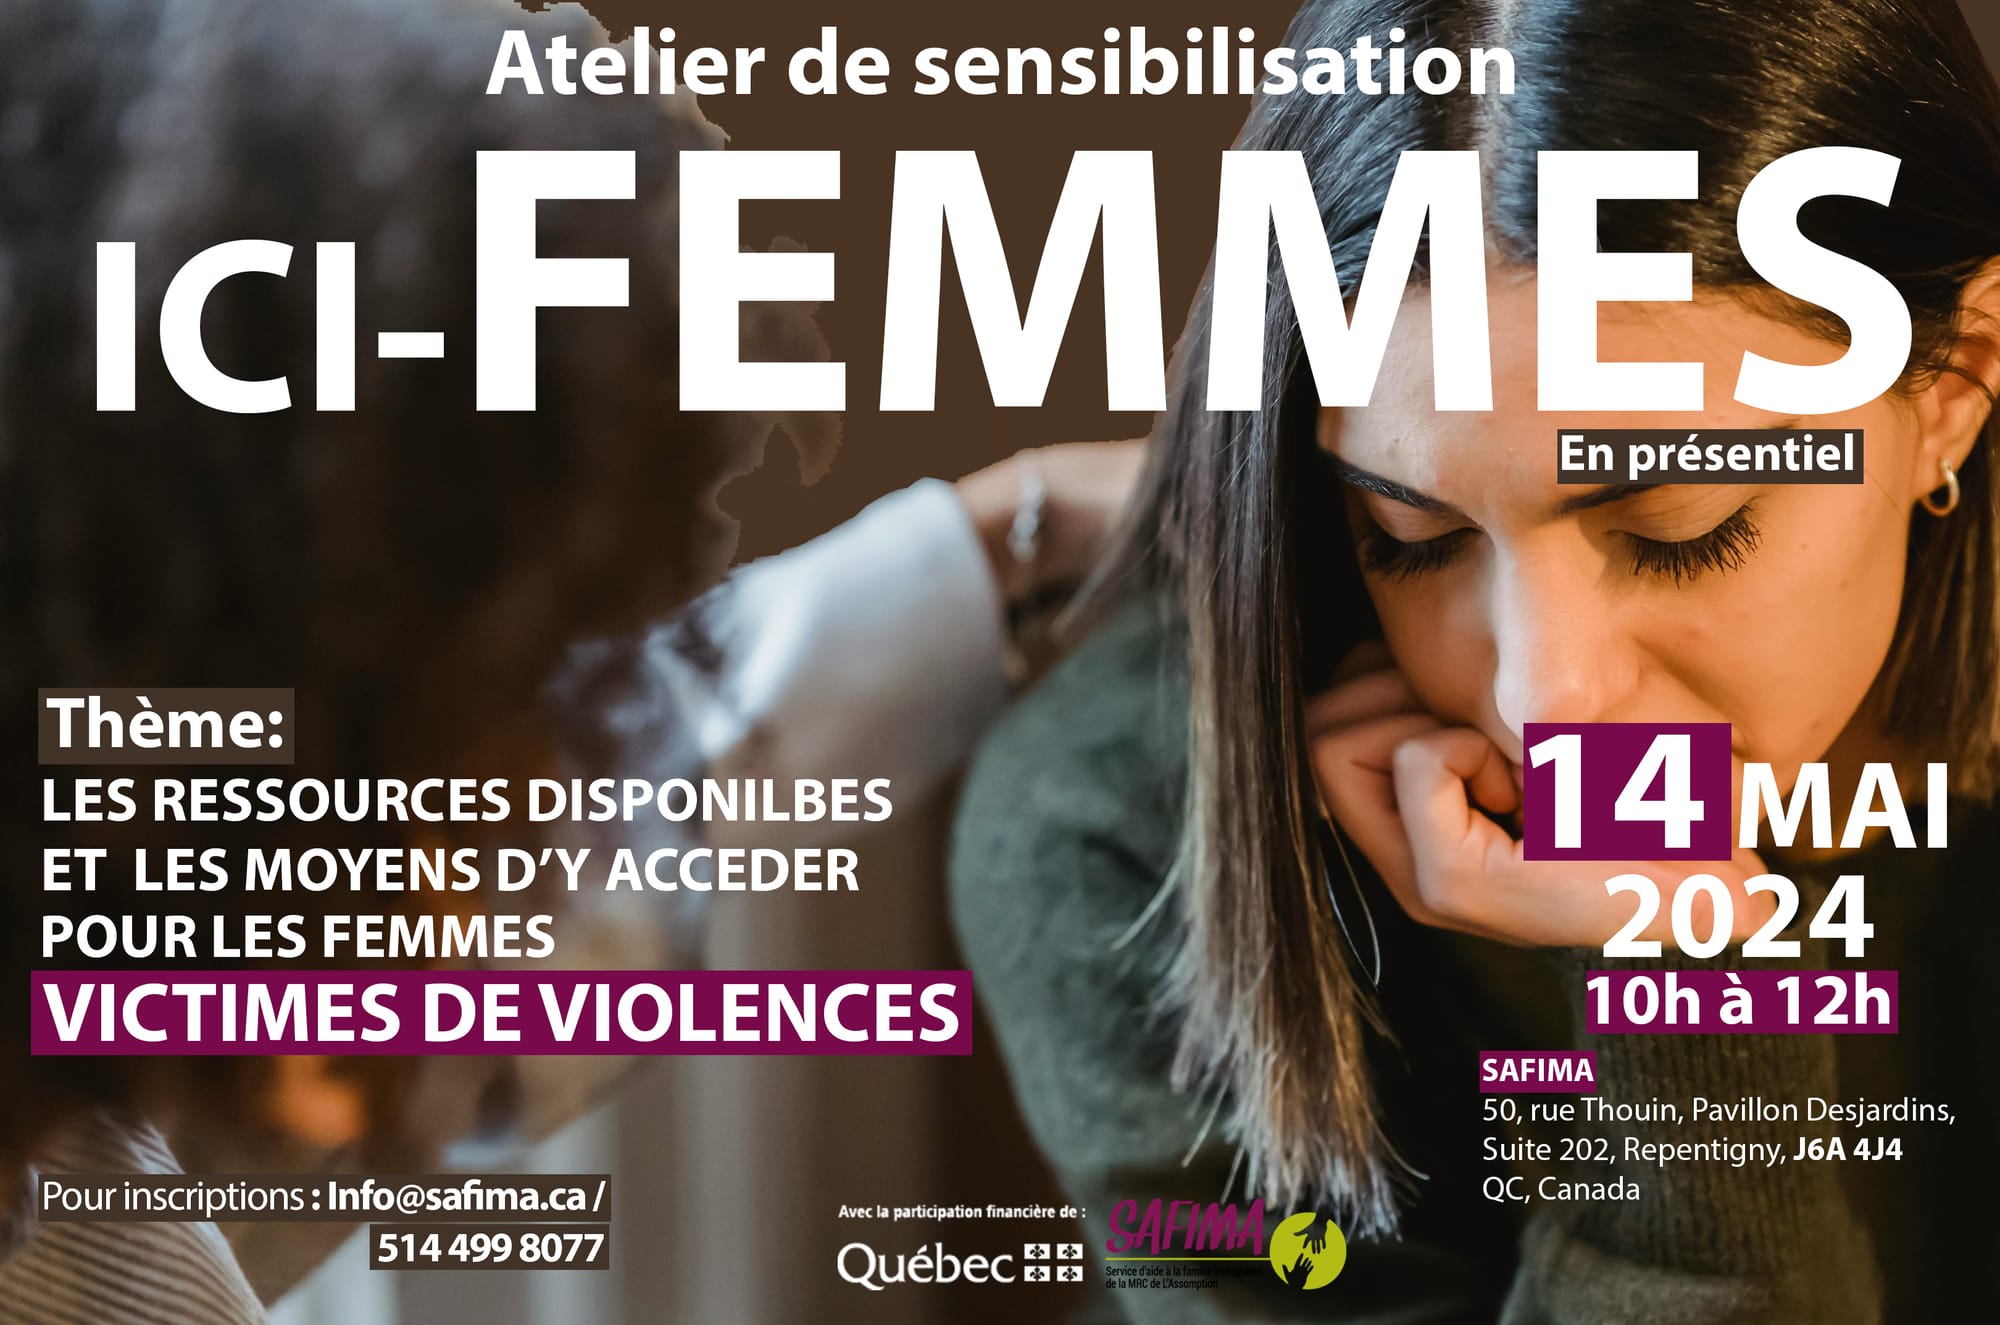 ATELIER DE FORMATION POUR LES FEMMES DU 14 MAI 2024